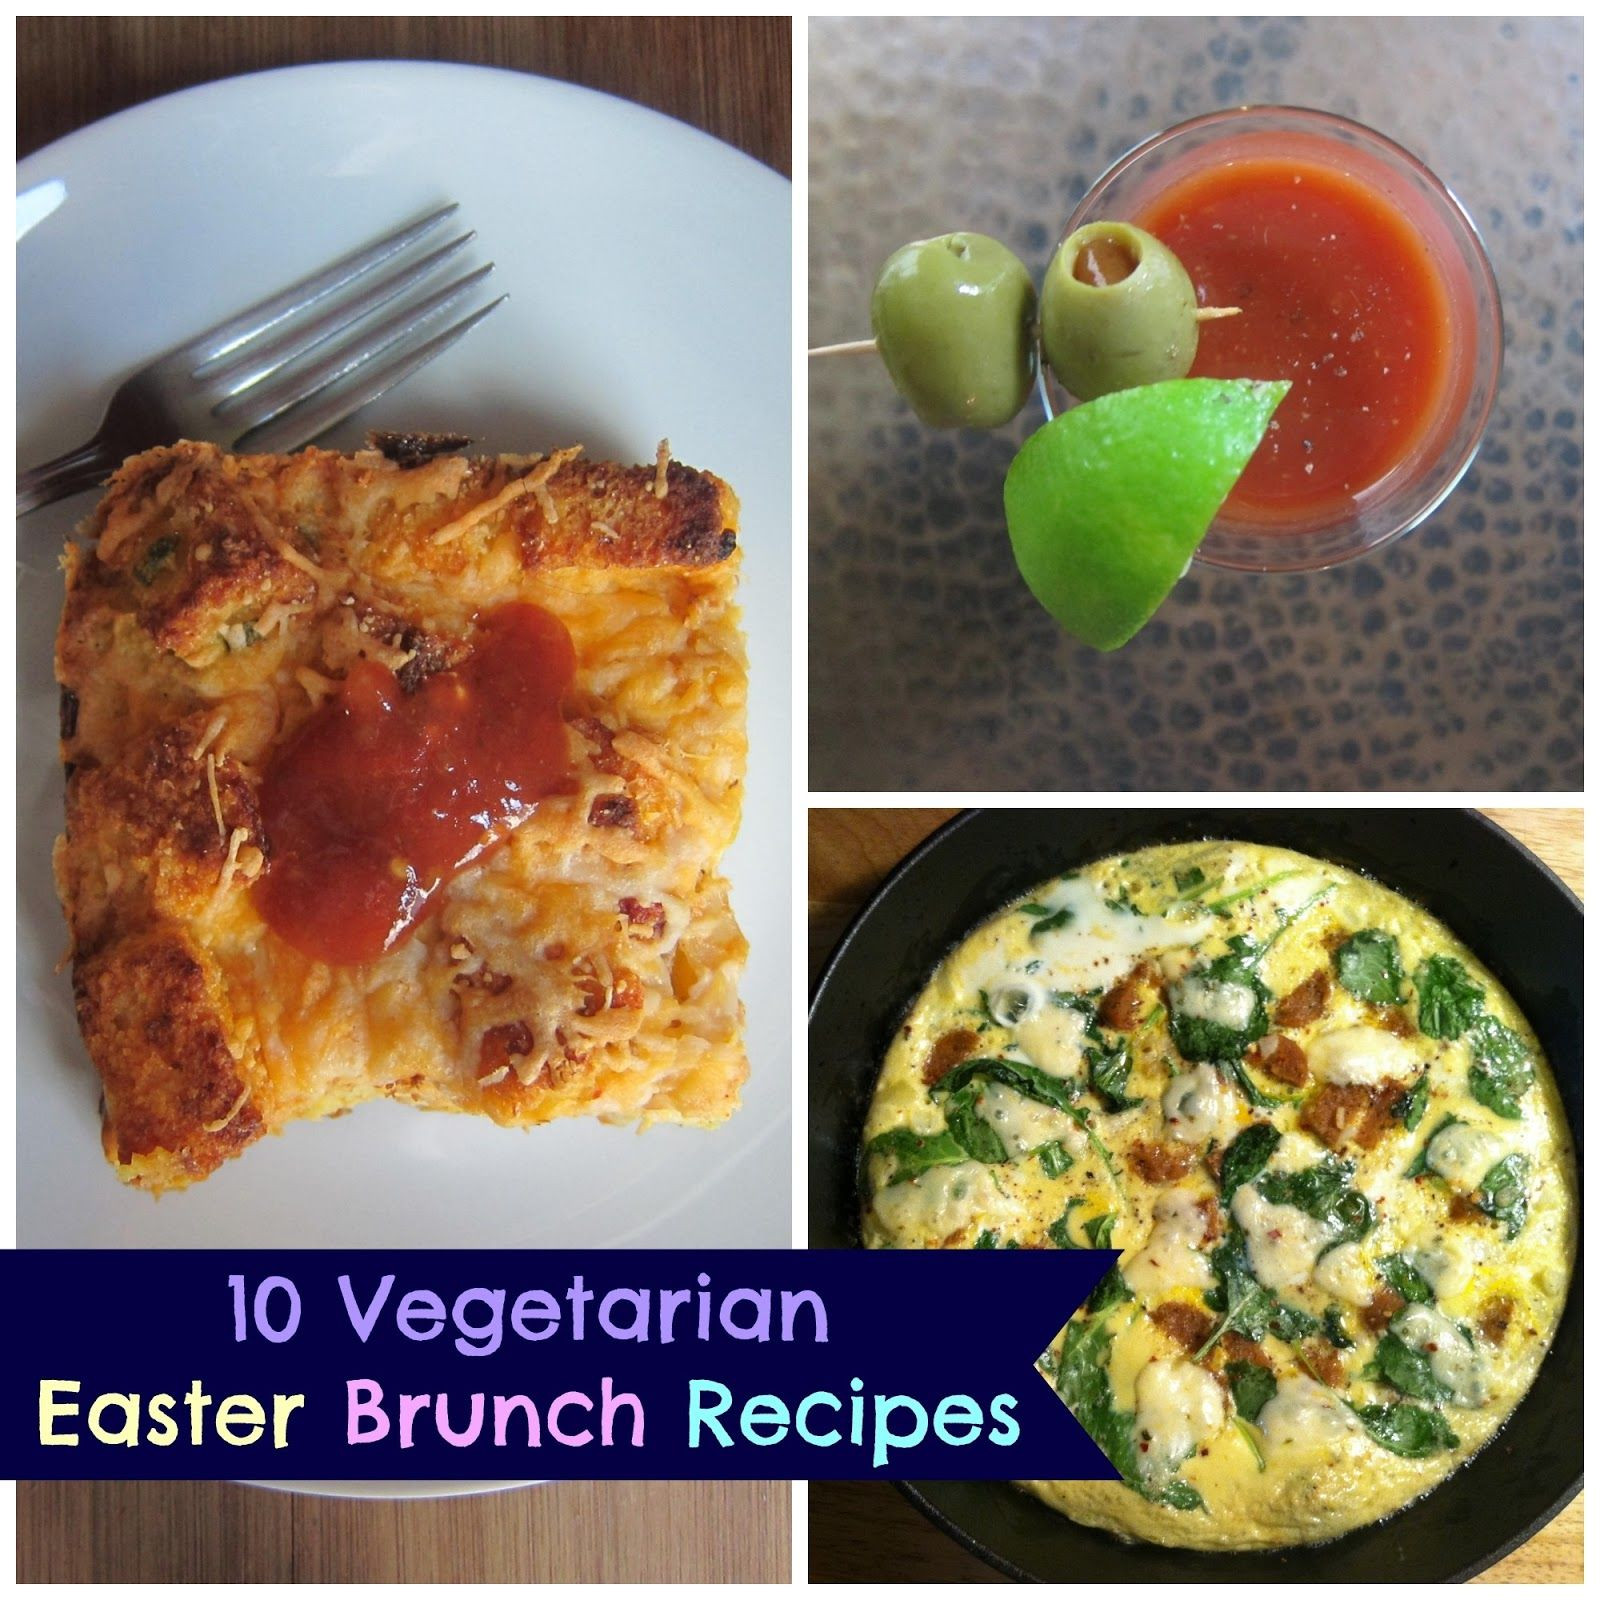 Vegetarian Easter Brunch Recipes
 10 Ve arian Easter Brunch Recipes